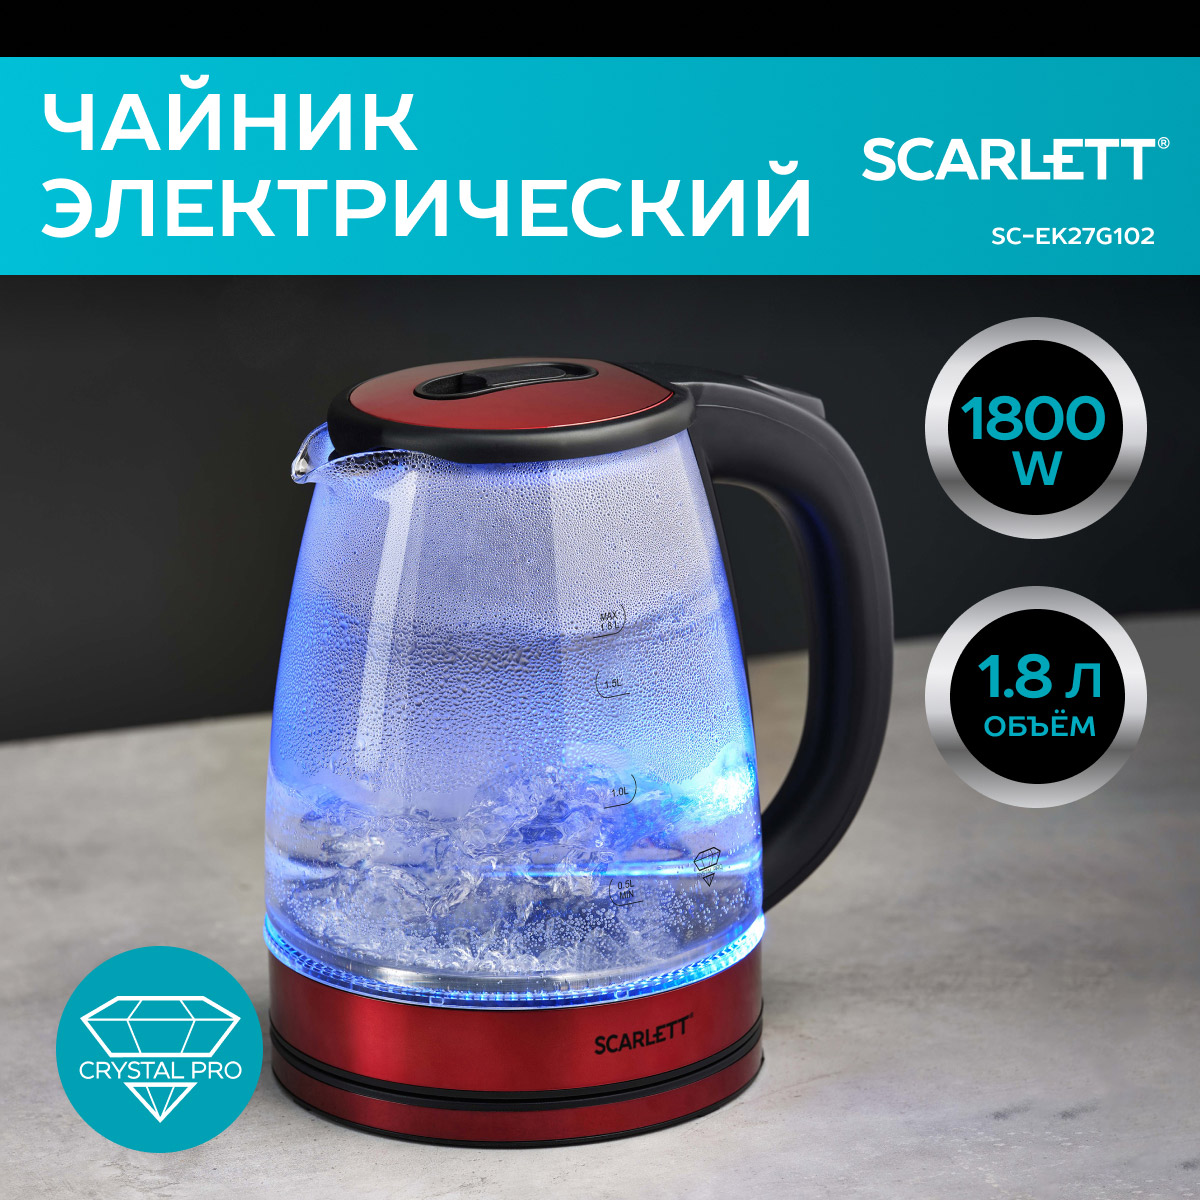 Чайник электрический Scarlett SC-EK27G102 1.8 л красный чайник daniks dsc 8798 красный 244154